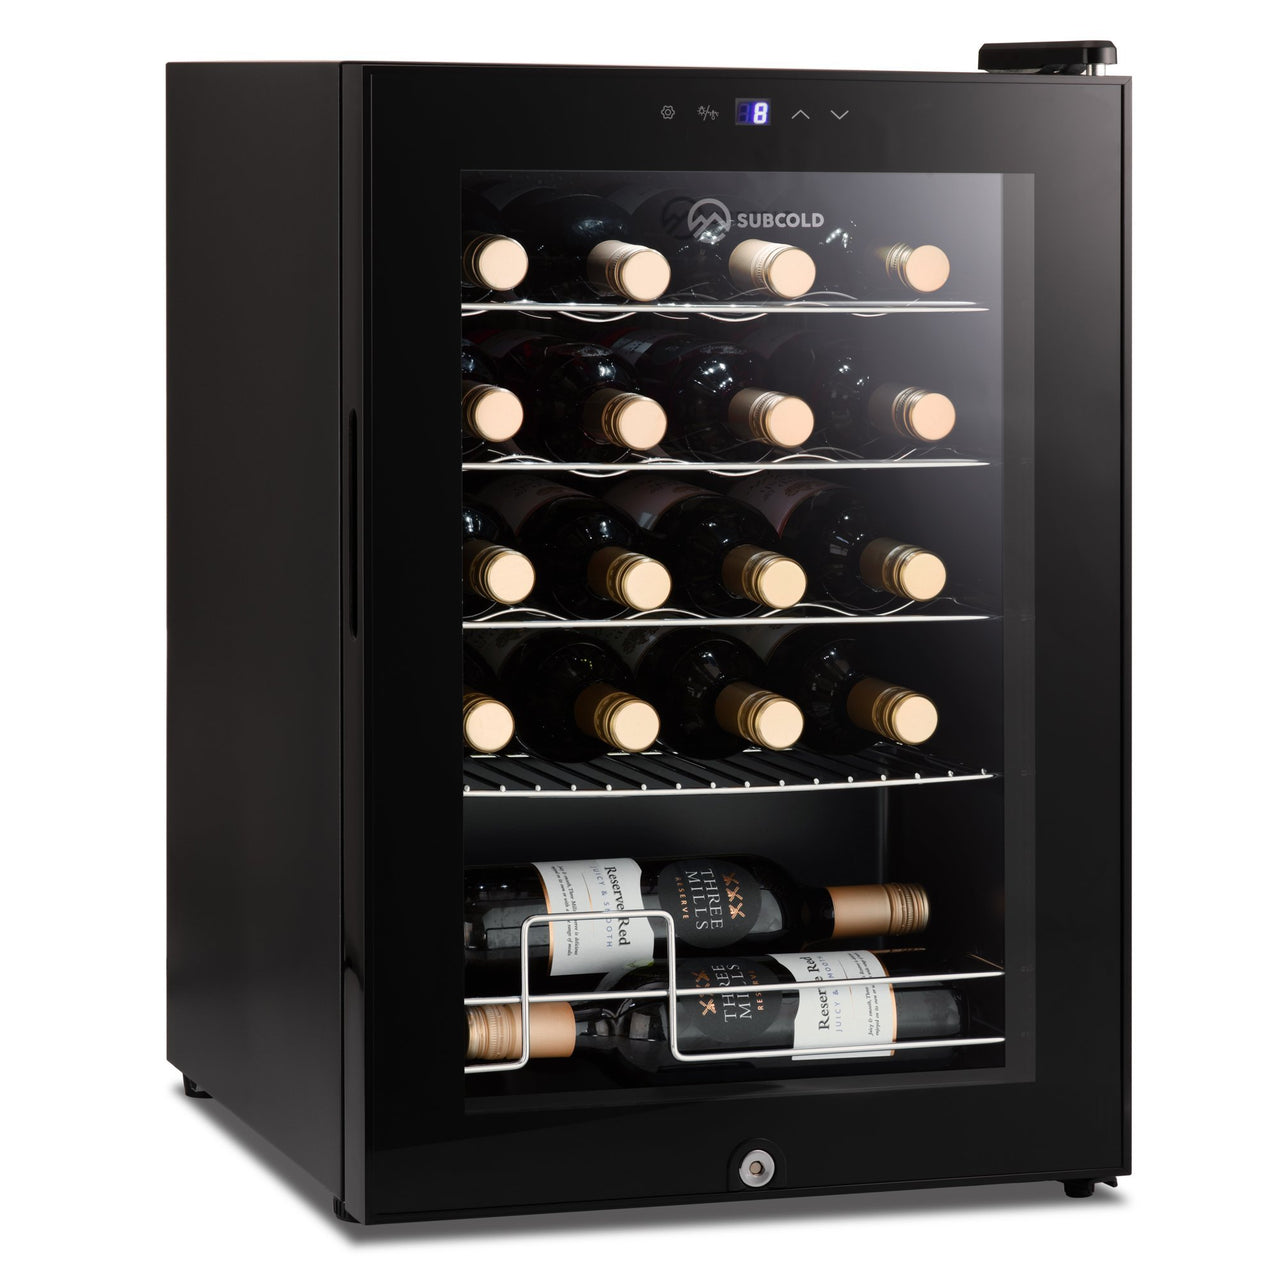 Subcold Viva 20 bottles wine cooler fridge (57 litre)